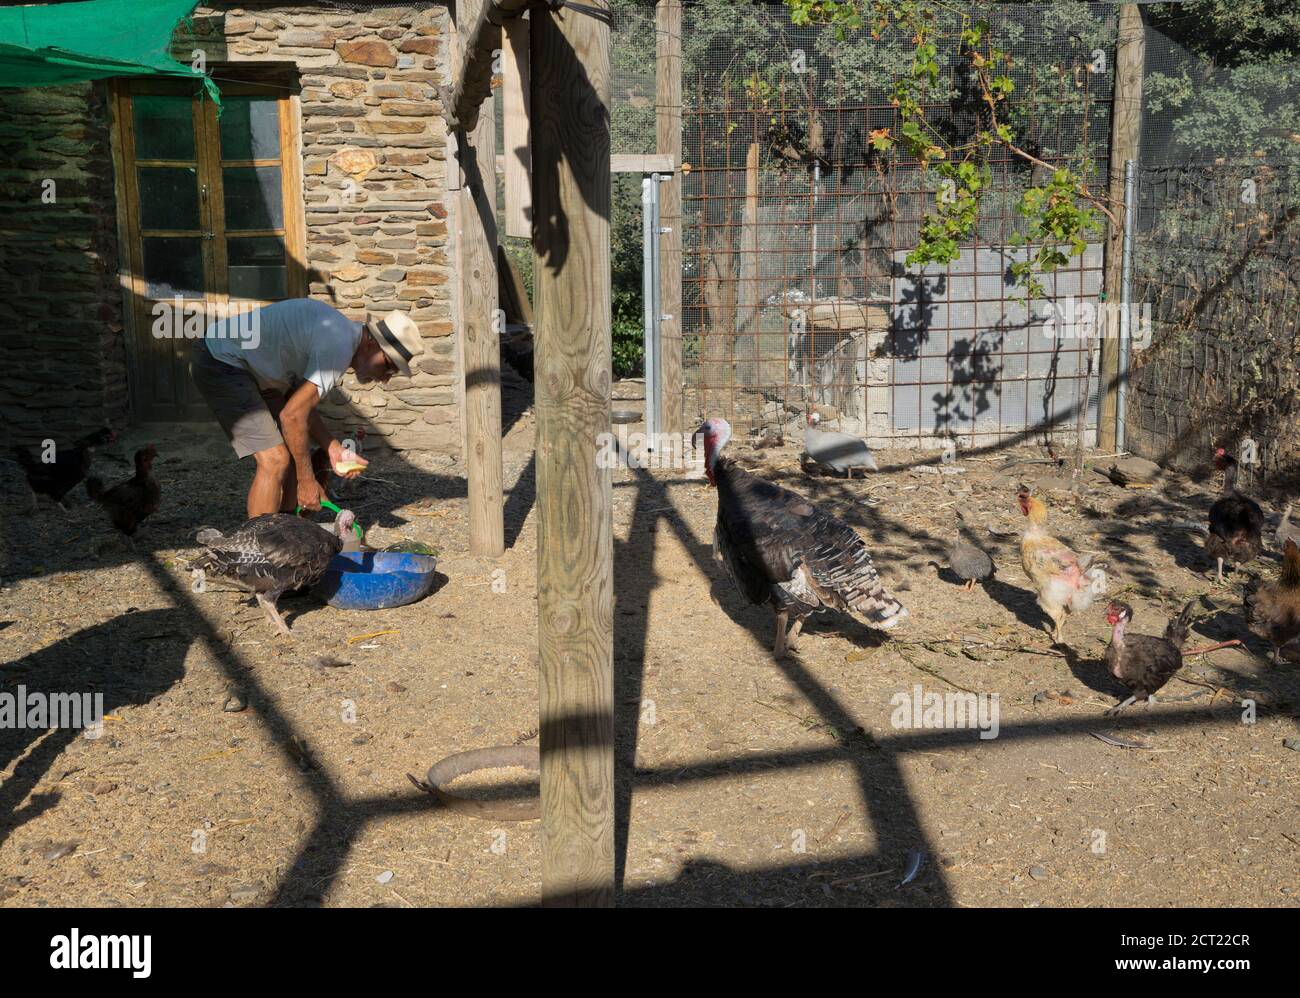 Fermier nourrissant des animaux et triant des amandes dans une ferme dans les montagnes Alpujarra, Sierra Nevada, près de Grenade, Espagne, Europe Banque D'Images